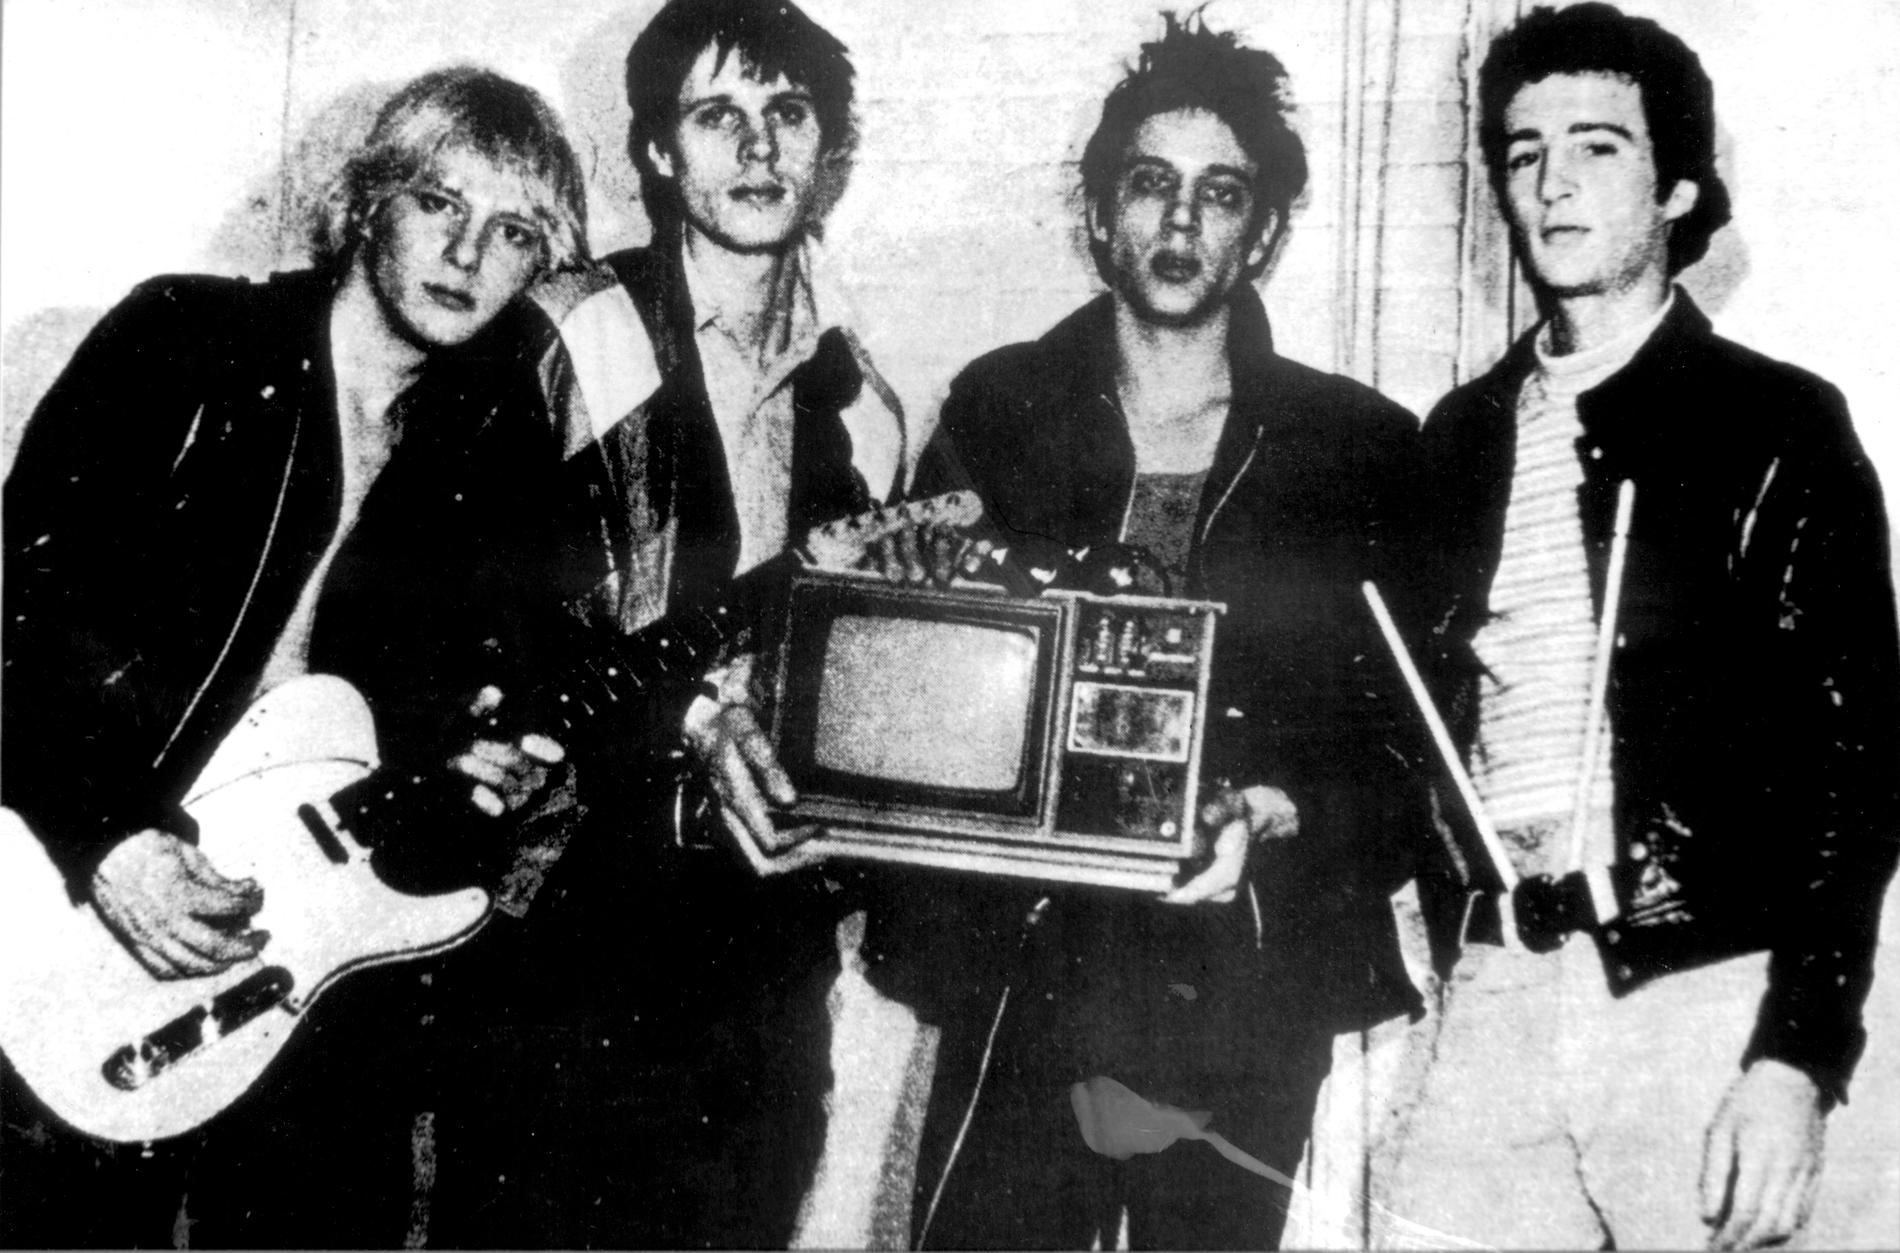 Tidigt pressbild på Television från 1974. Från vänster: Richard Lloyd, Tom Verlaine, Richard Hell och Billy Ficca. 